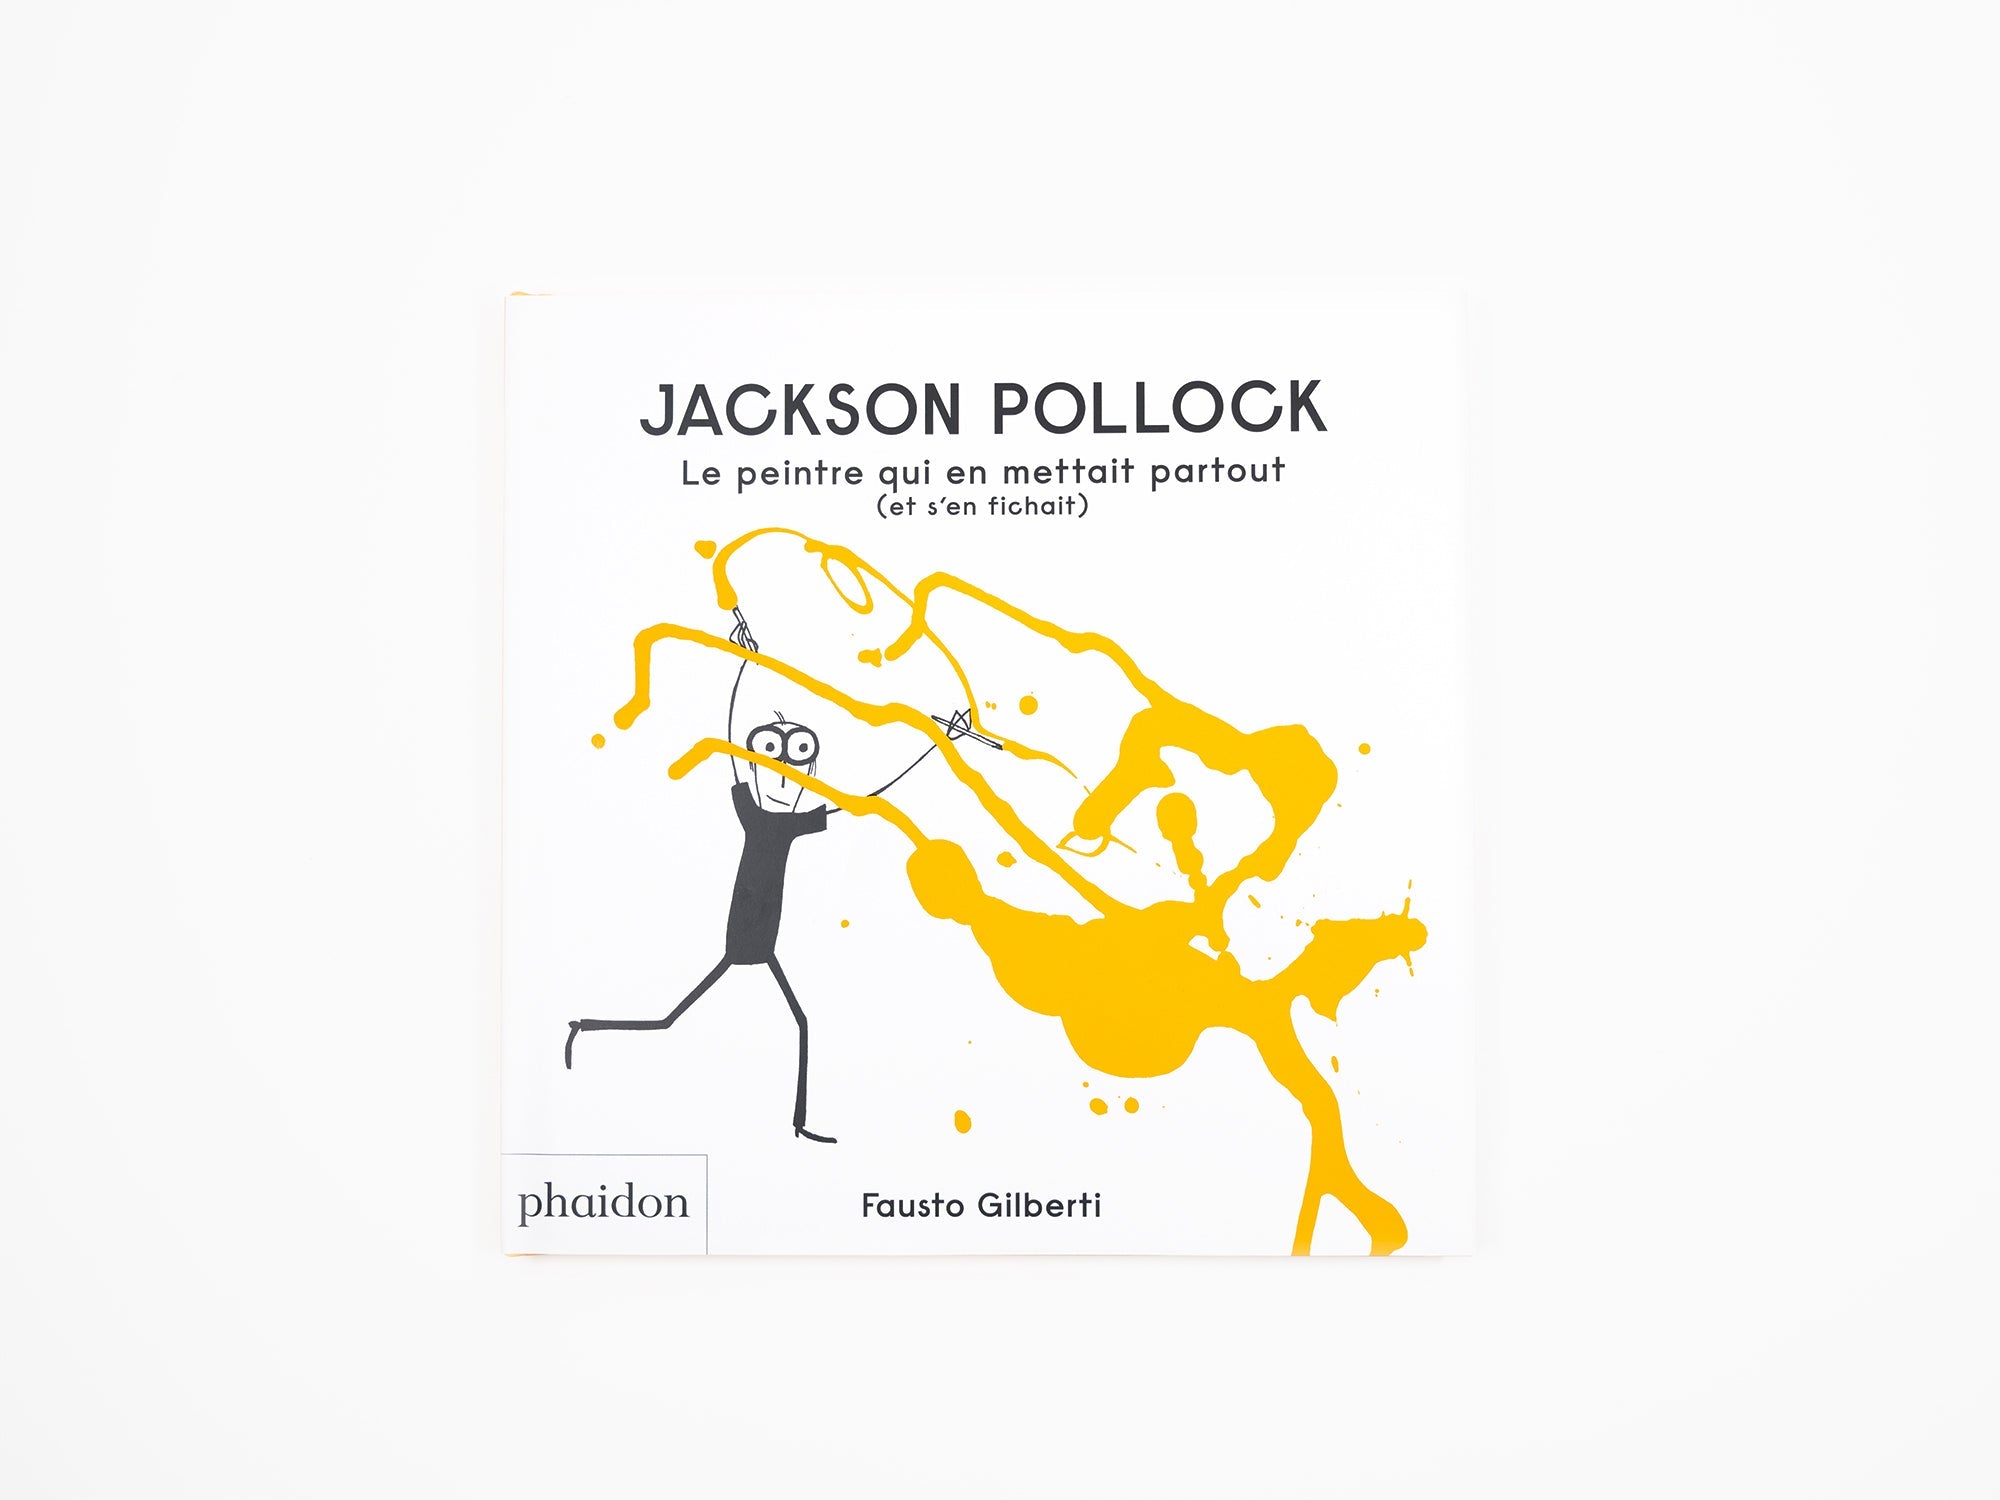 Fausto Gilberti - Jackson Pollock, Le peintre qui en mettait partout (et s'en fichait)